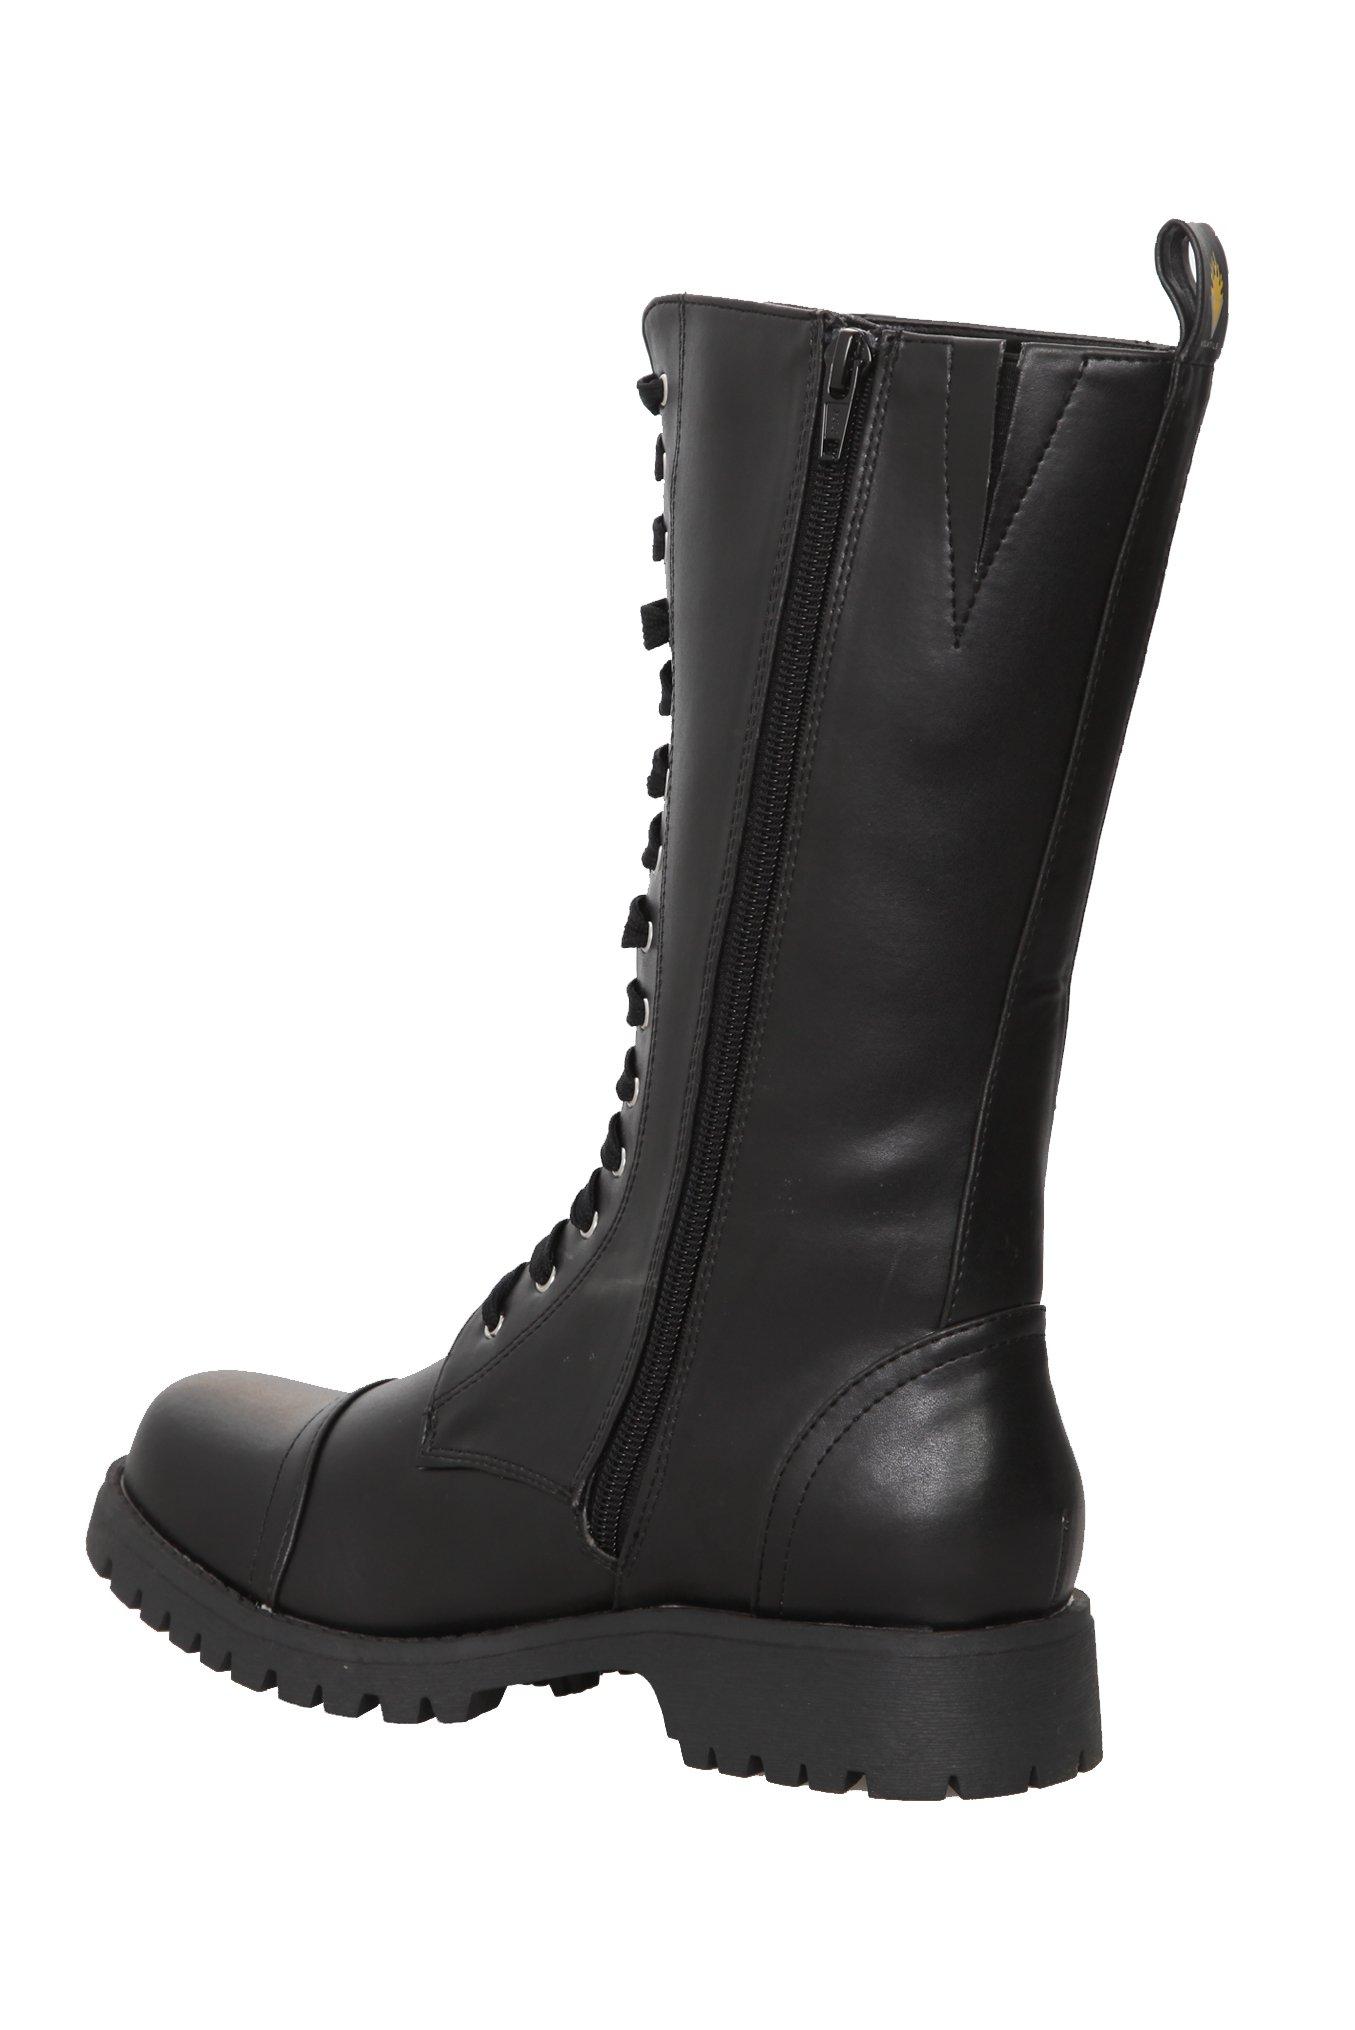 Volatile Black Stash Combat Boots, , alternate